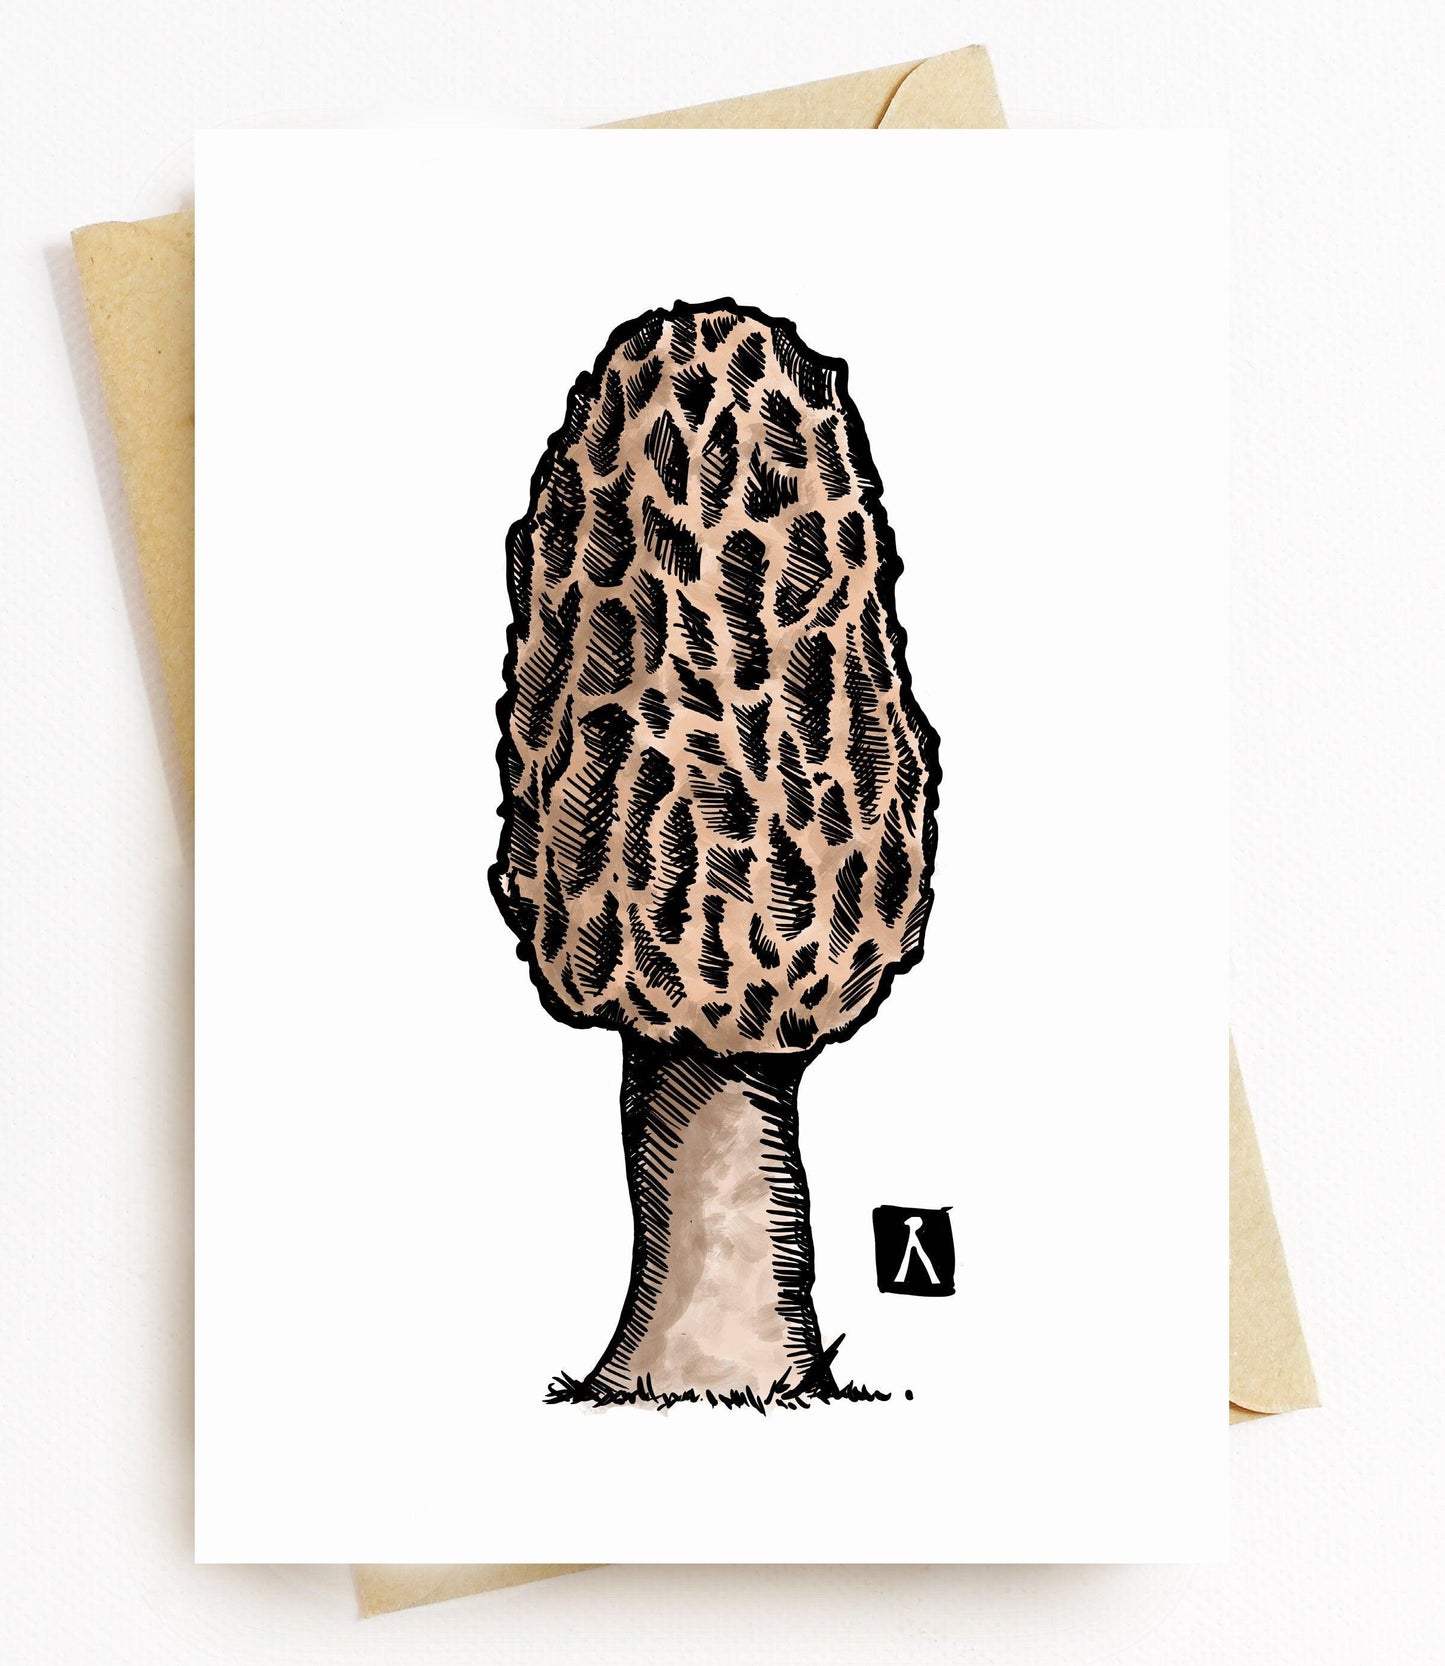 BellavanceInk: Greeting Card With a Pen & Ink Drawing/Watercolor of a Morel Mushroom - BellavanceInk